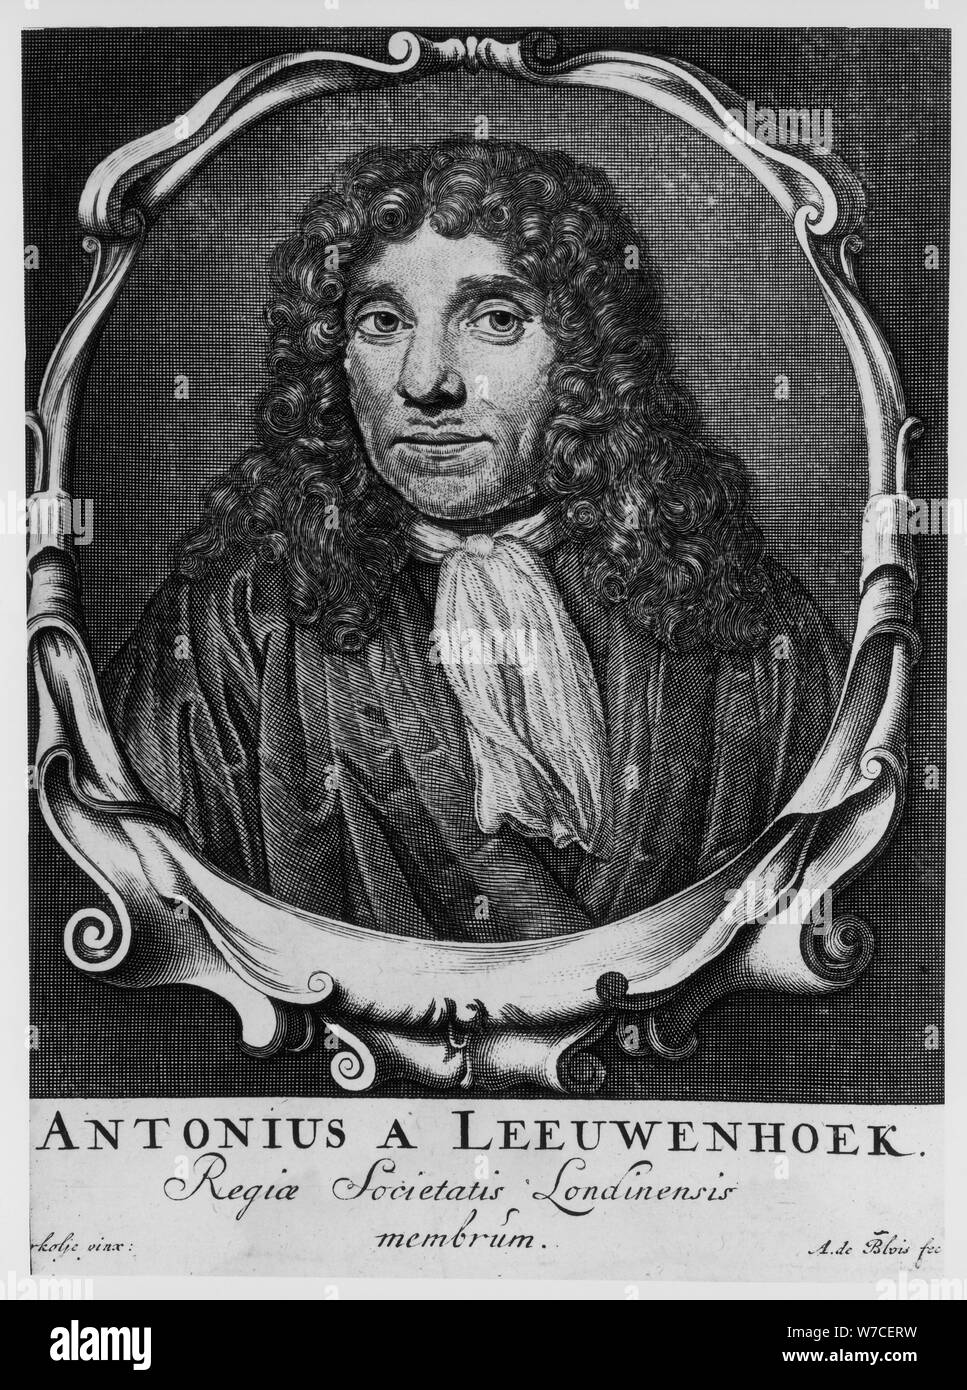 Antoni van Leeuwenhoek, Dutch pioneer of microscopy, c1660. Artist: Abraham de Blois Stock Photo